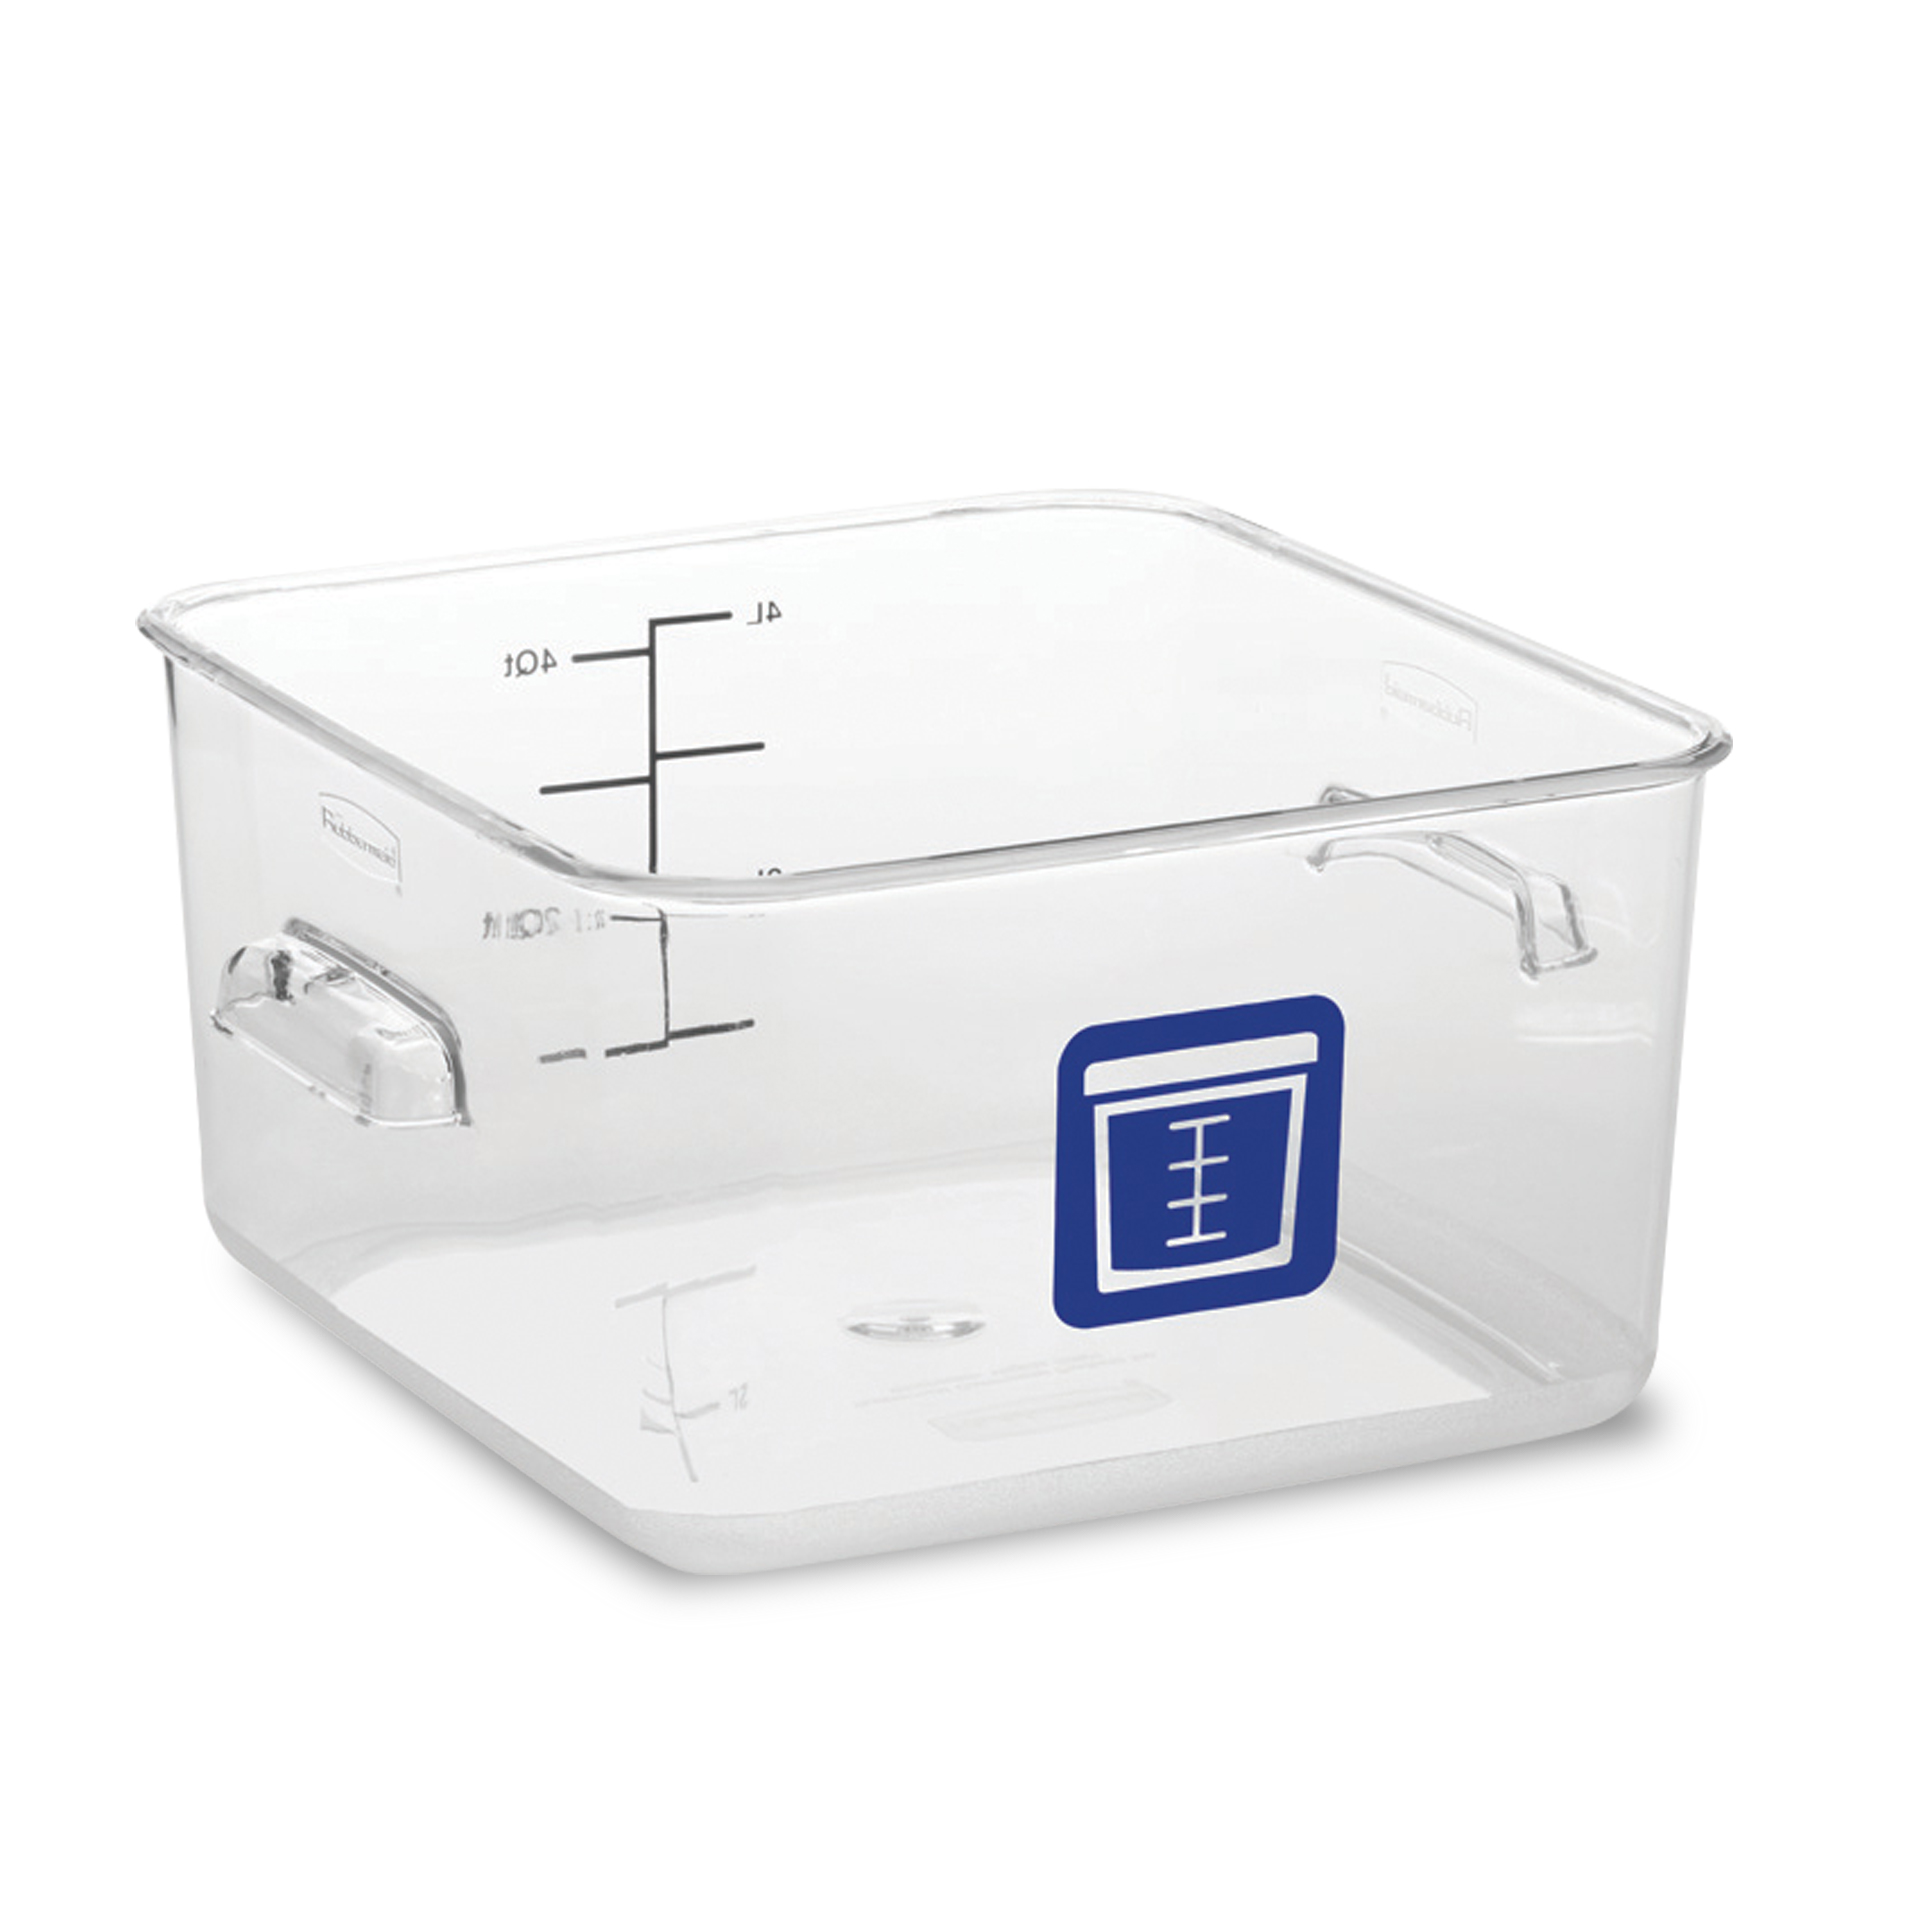 กล่องเก็บวัตถุดิบอาหารสี่เหลี่ยม Color-Coded Square Container Clear ขนาด 4 qt สีน้ำเงิน